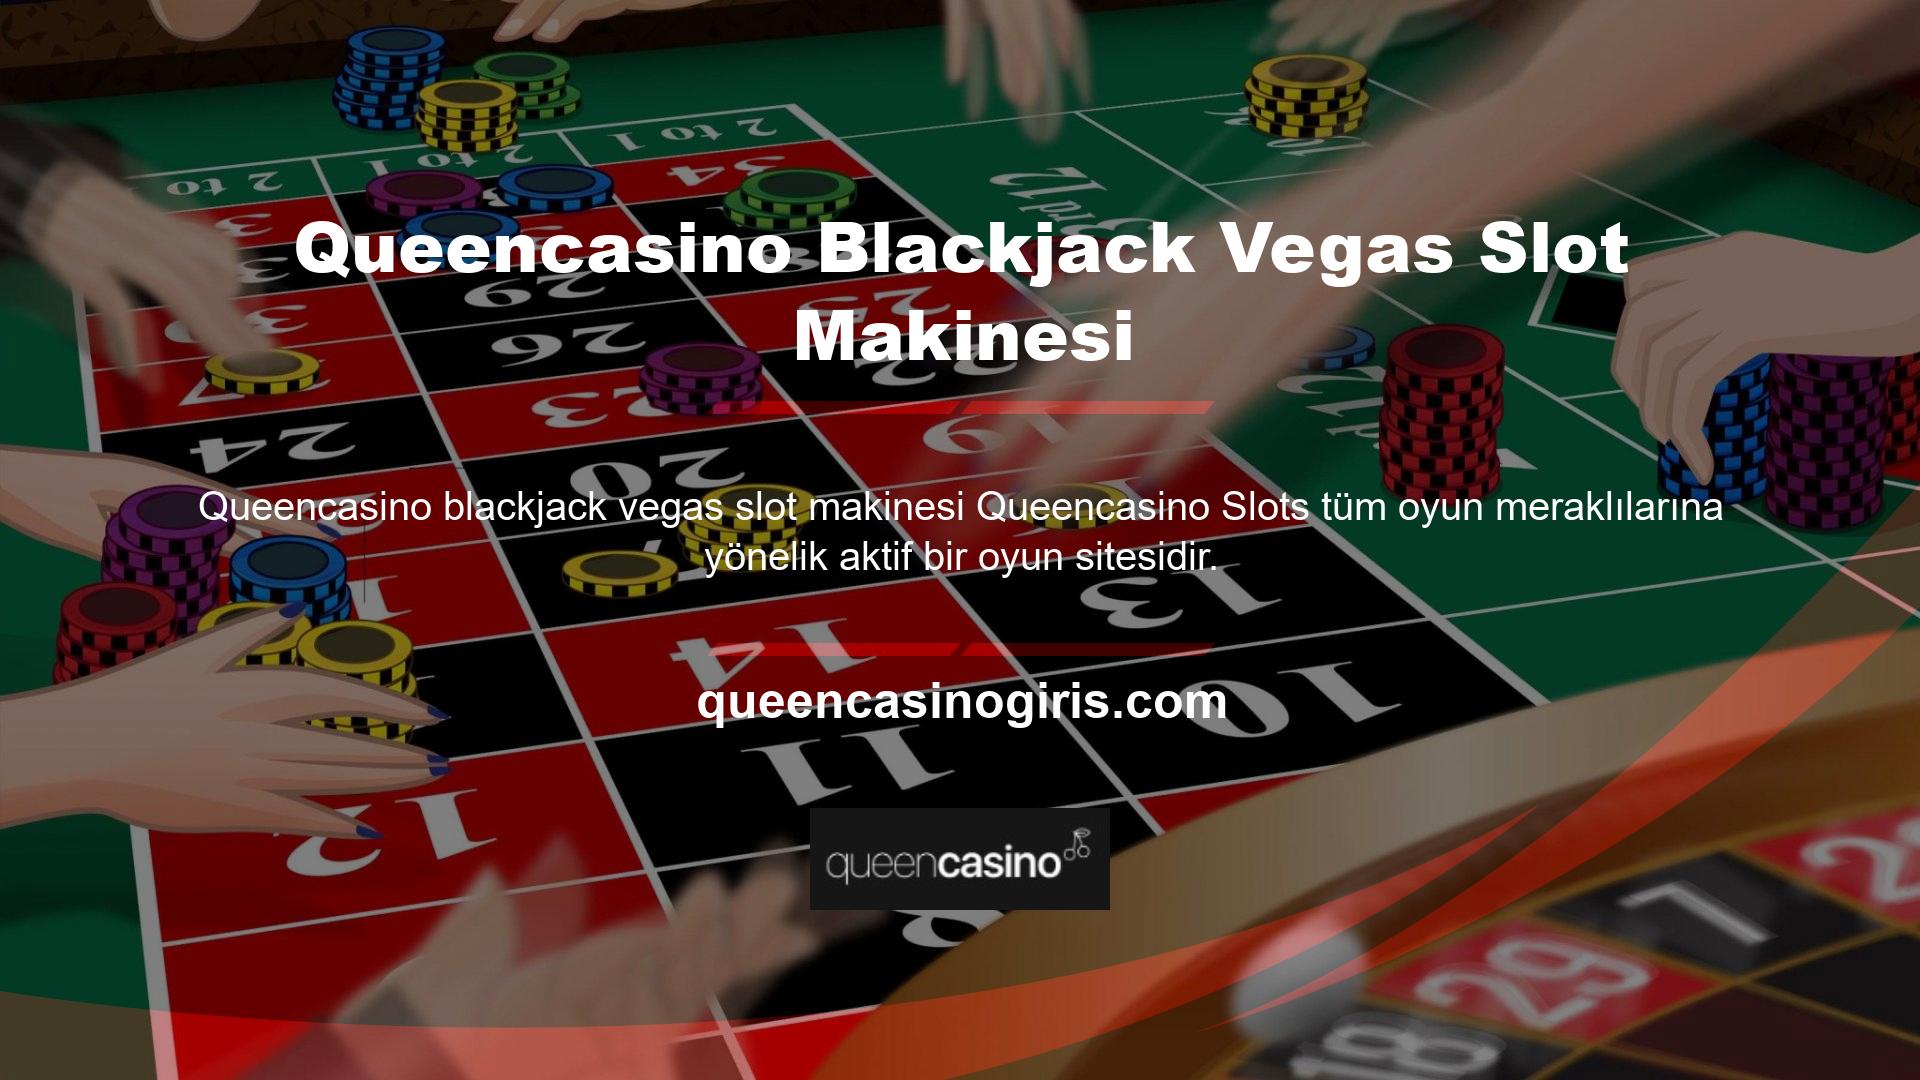 Queencasino bahis platformu, oyun kategorilerini oyuncuların tercihlerine göre düzenlemekte ve geliştirmektedir